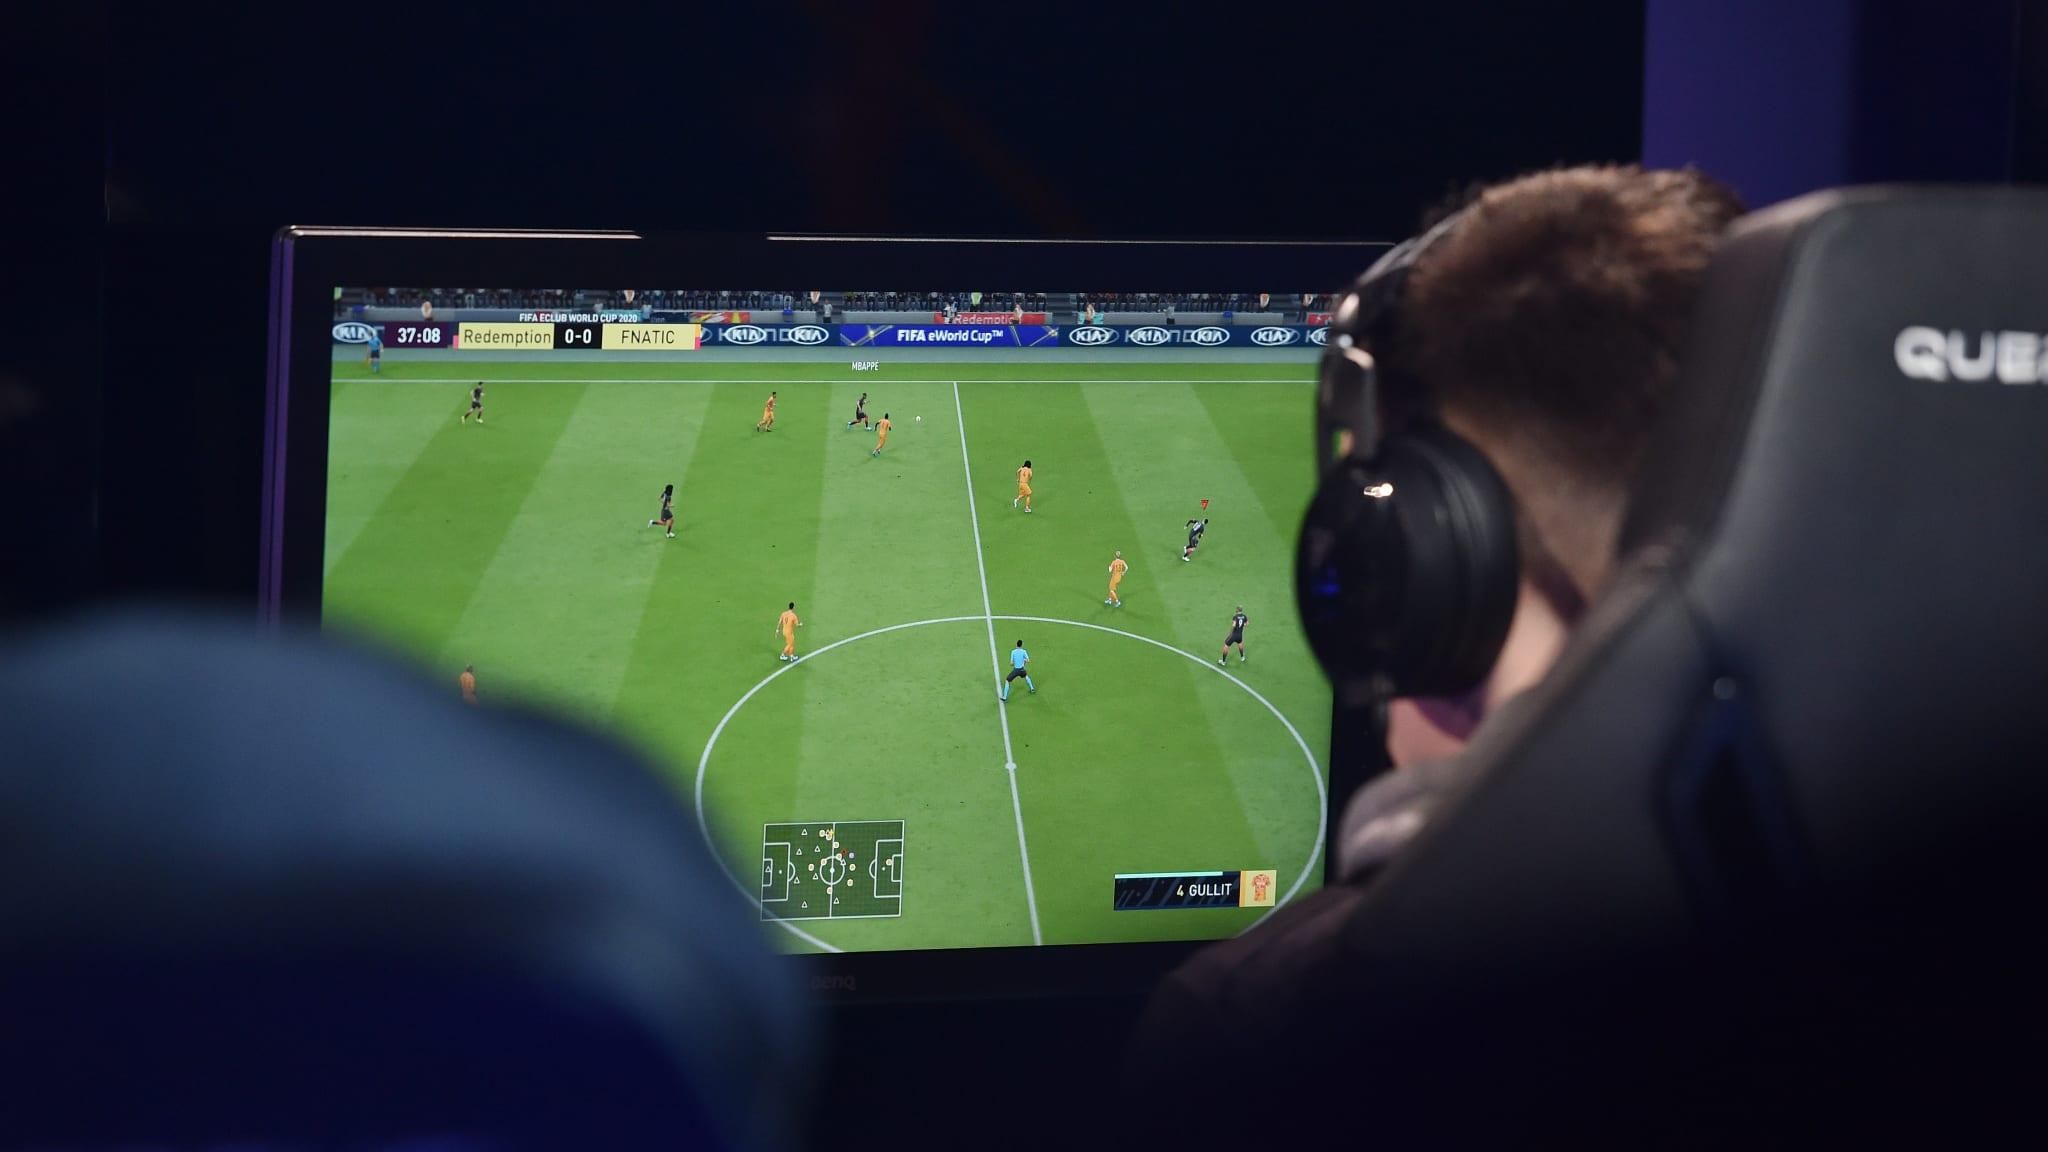 ФИФА в 2020 году заработала больше на компьютерных играх, чем на реальном футболе